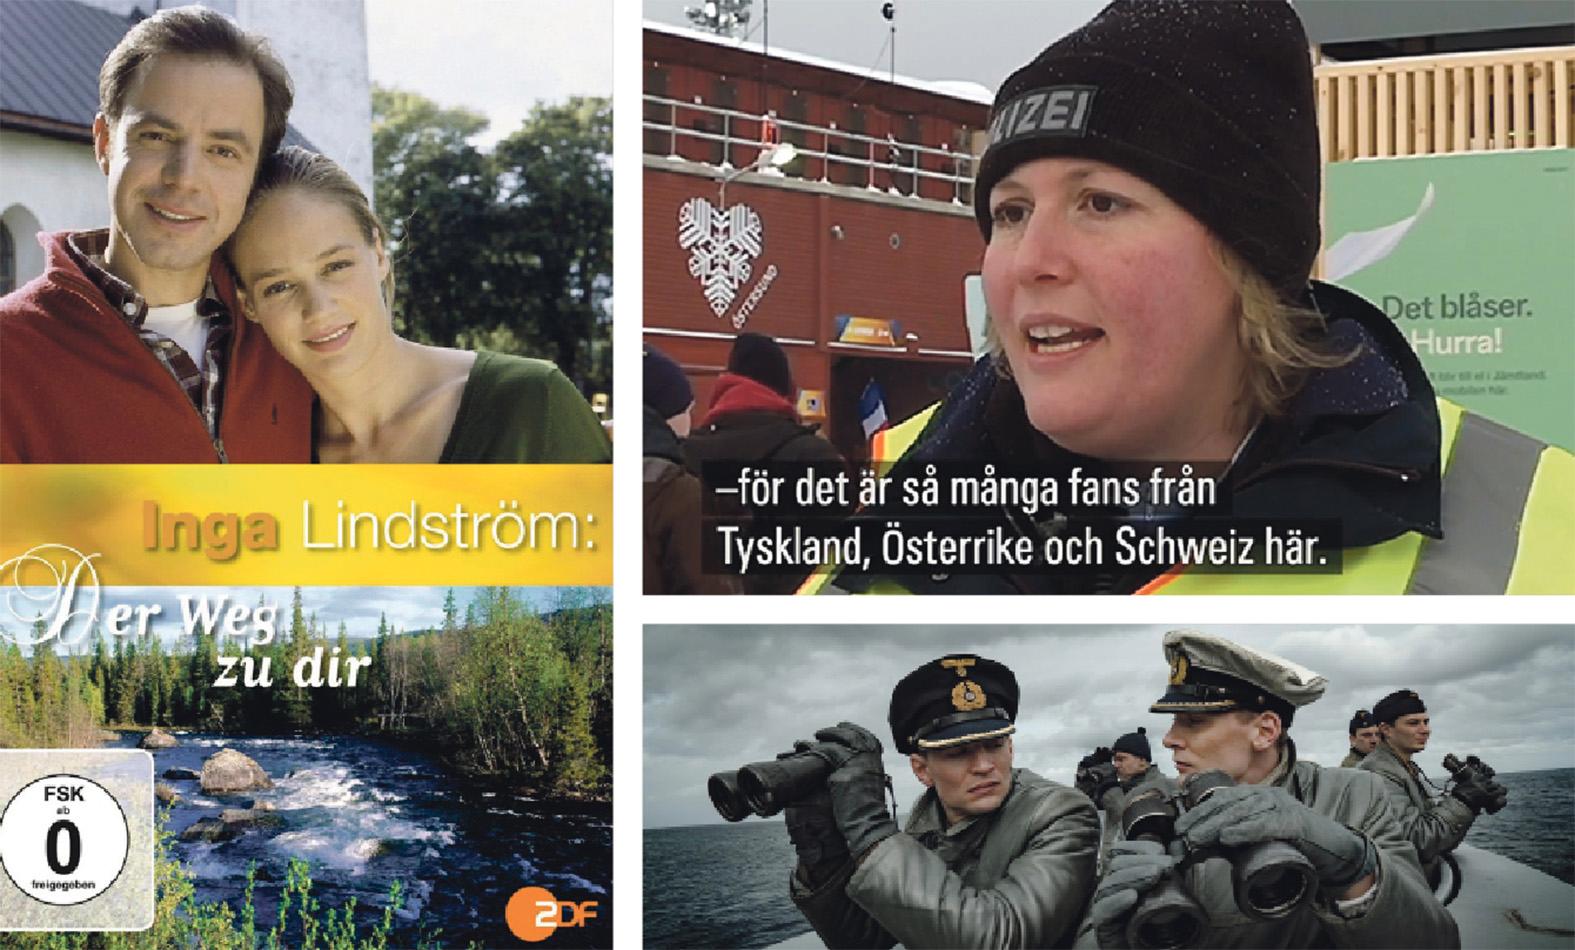 Tysk trio. Den tyska filmserien om Inga Lindström, polisen Marei i Östersund och tv-serien ”Das Boot”.